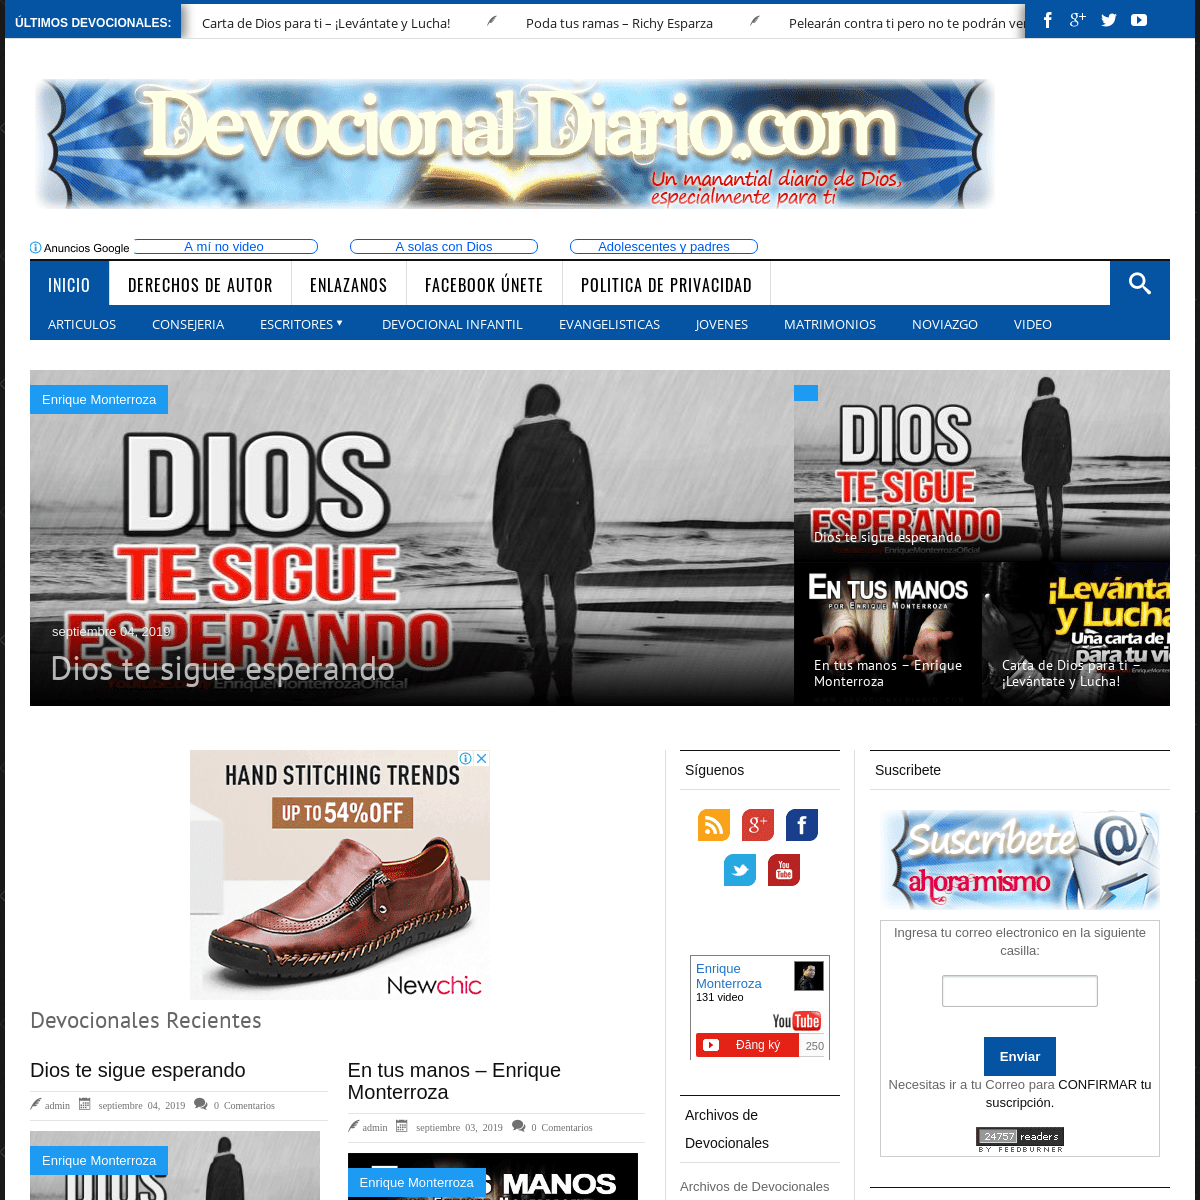 Devocional Diario.com | Devocionales Diarios, Reflexiones Diarias, Meditaciones Diarias, Articulos Cristianos